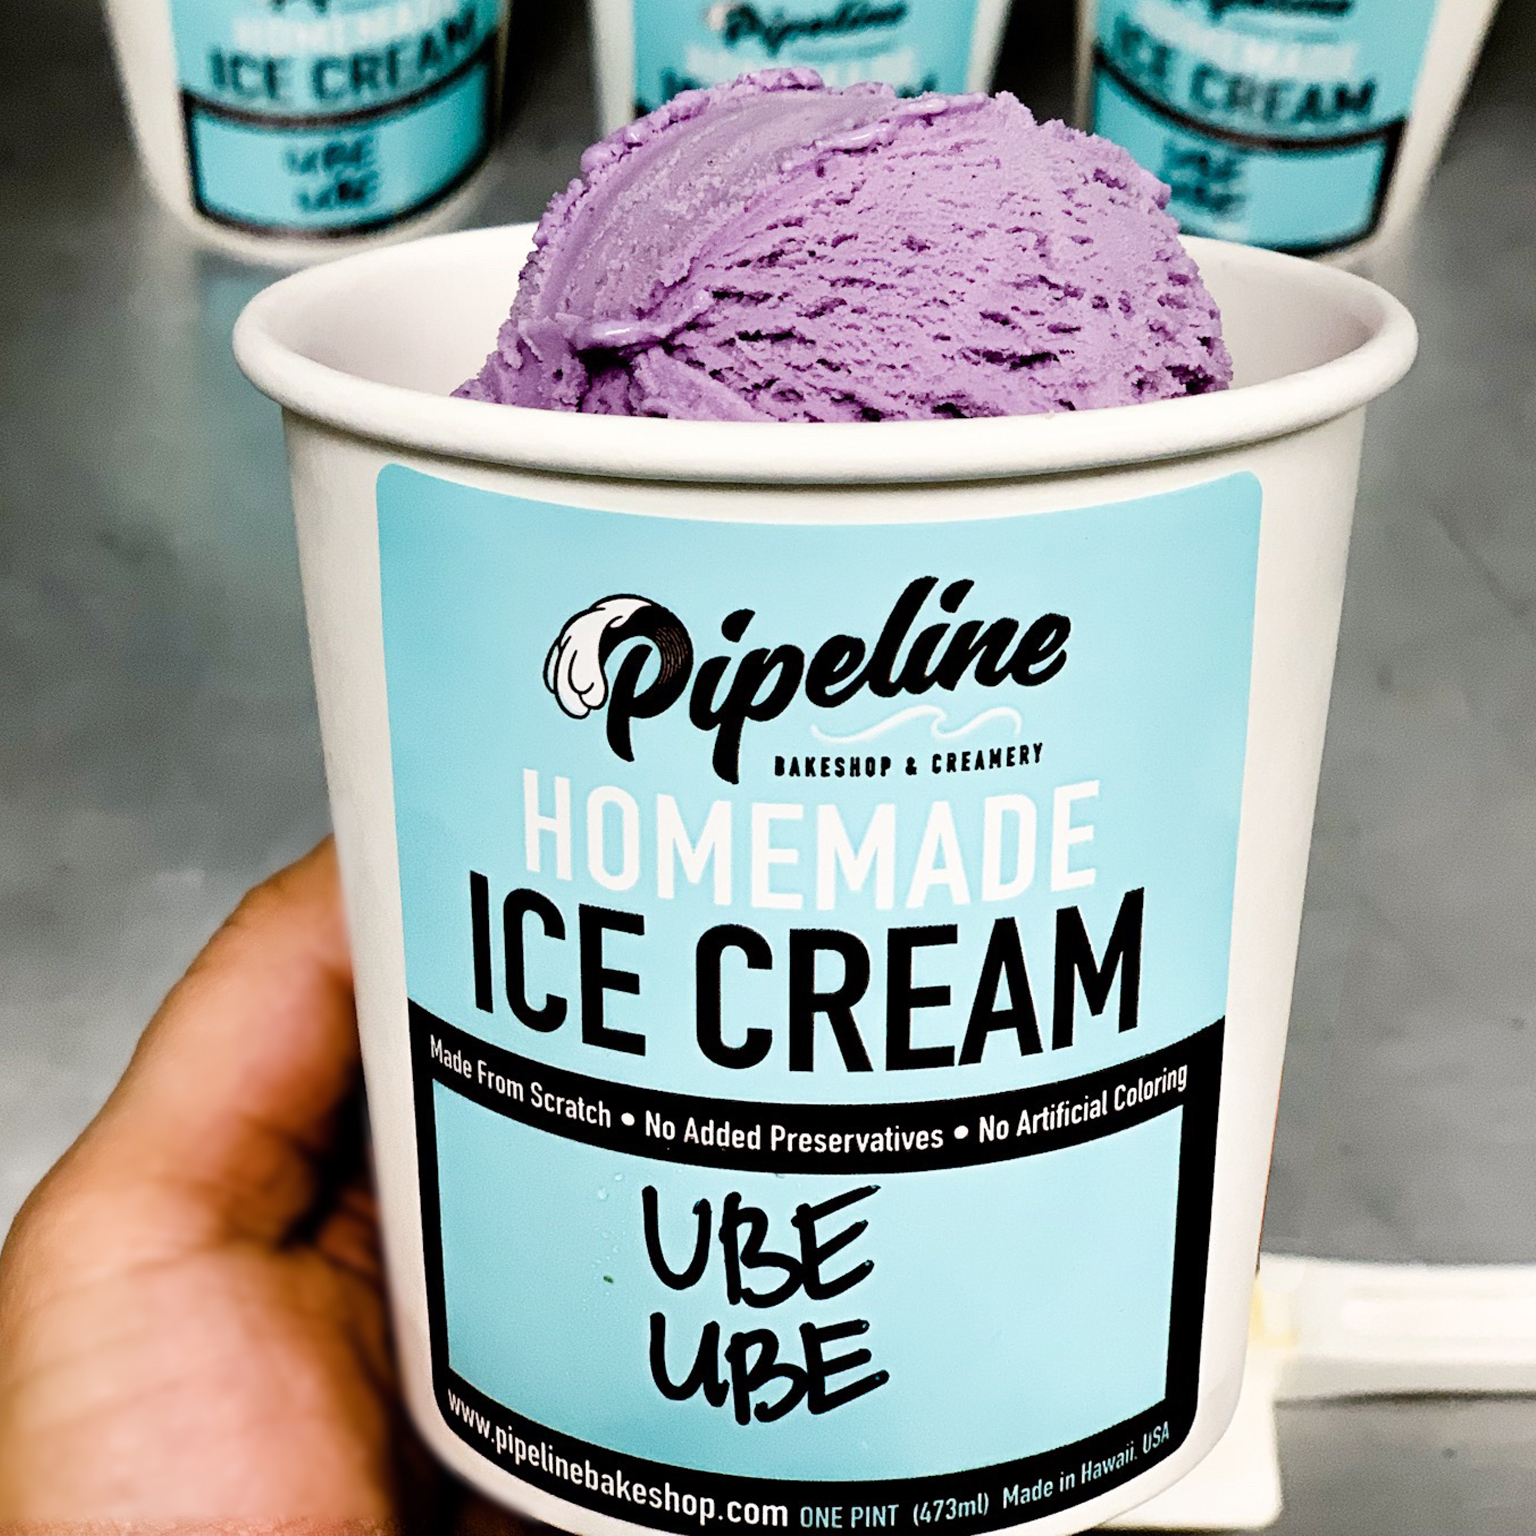 ICE CREAM - Pipeline Bakeshop & Creamery